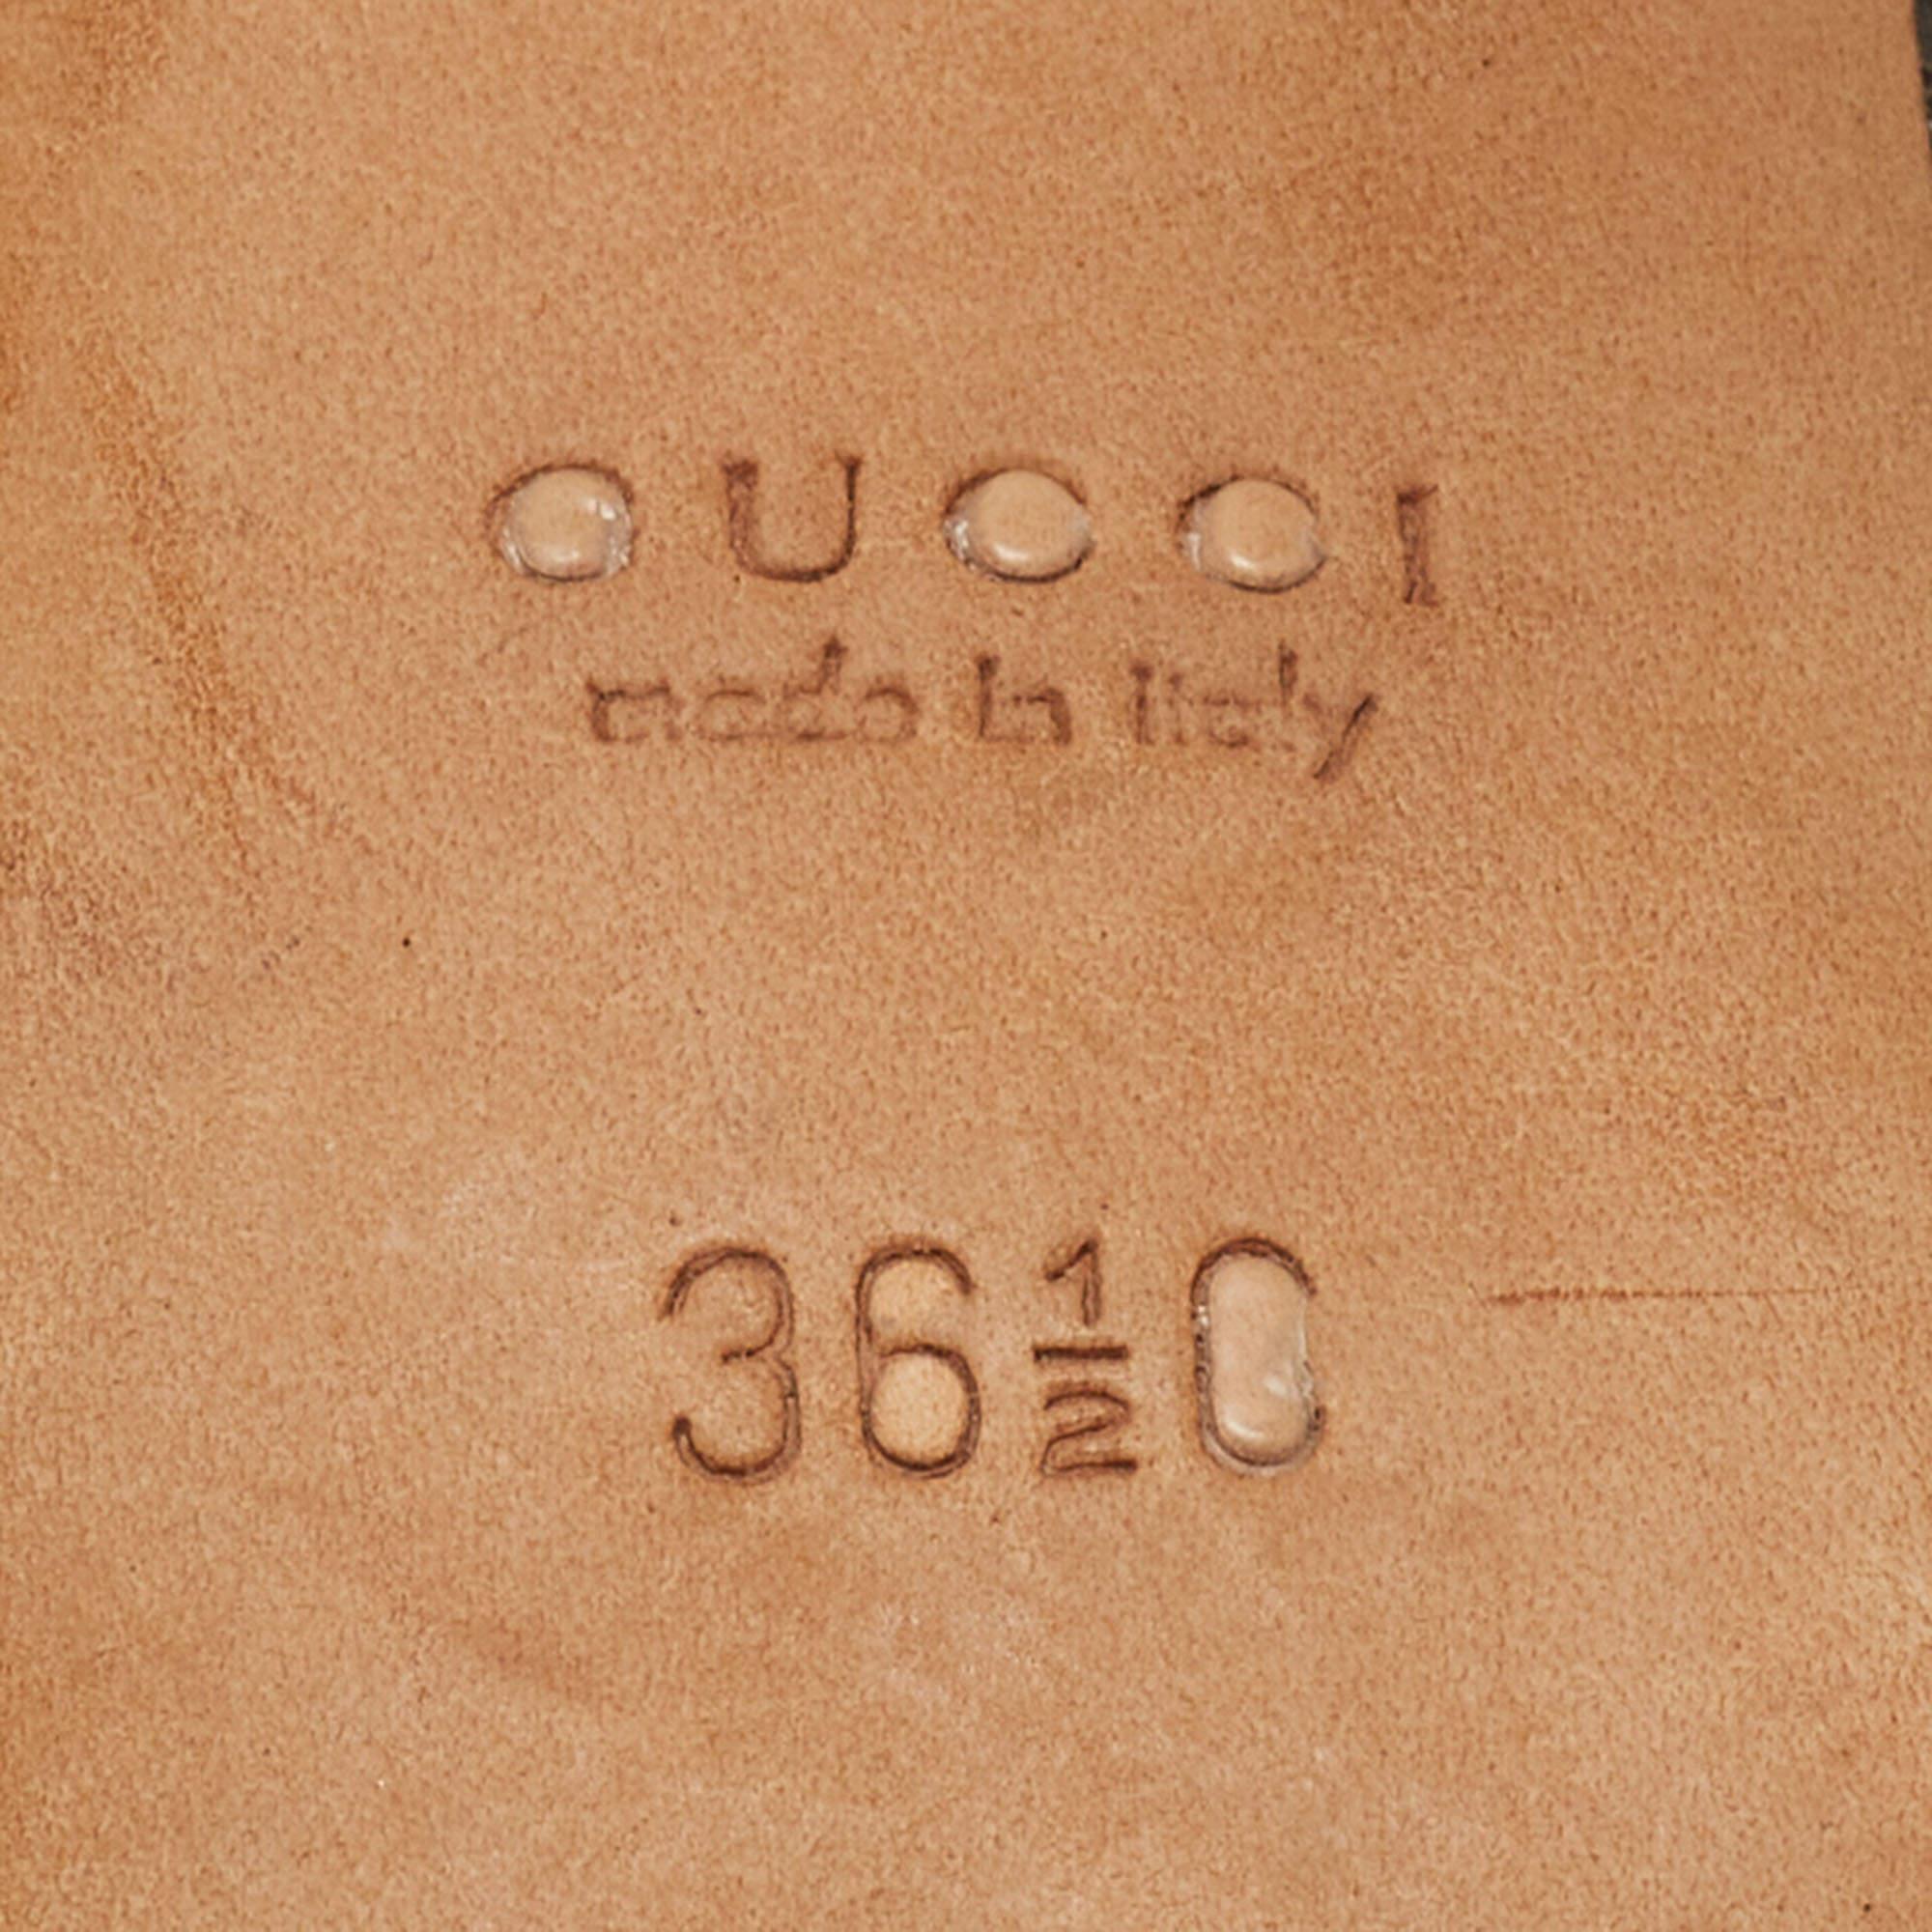 Gucci Tricolor Python, Crocodile and Lizard Platform Pumps Size 36.5 For Sale 4